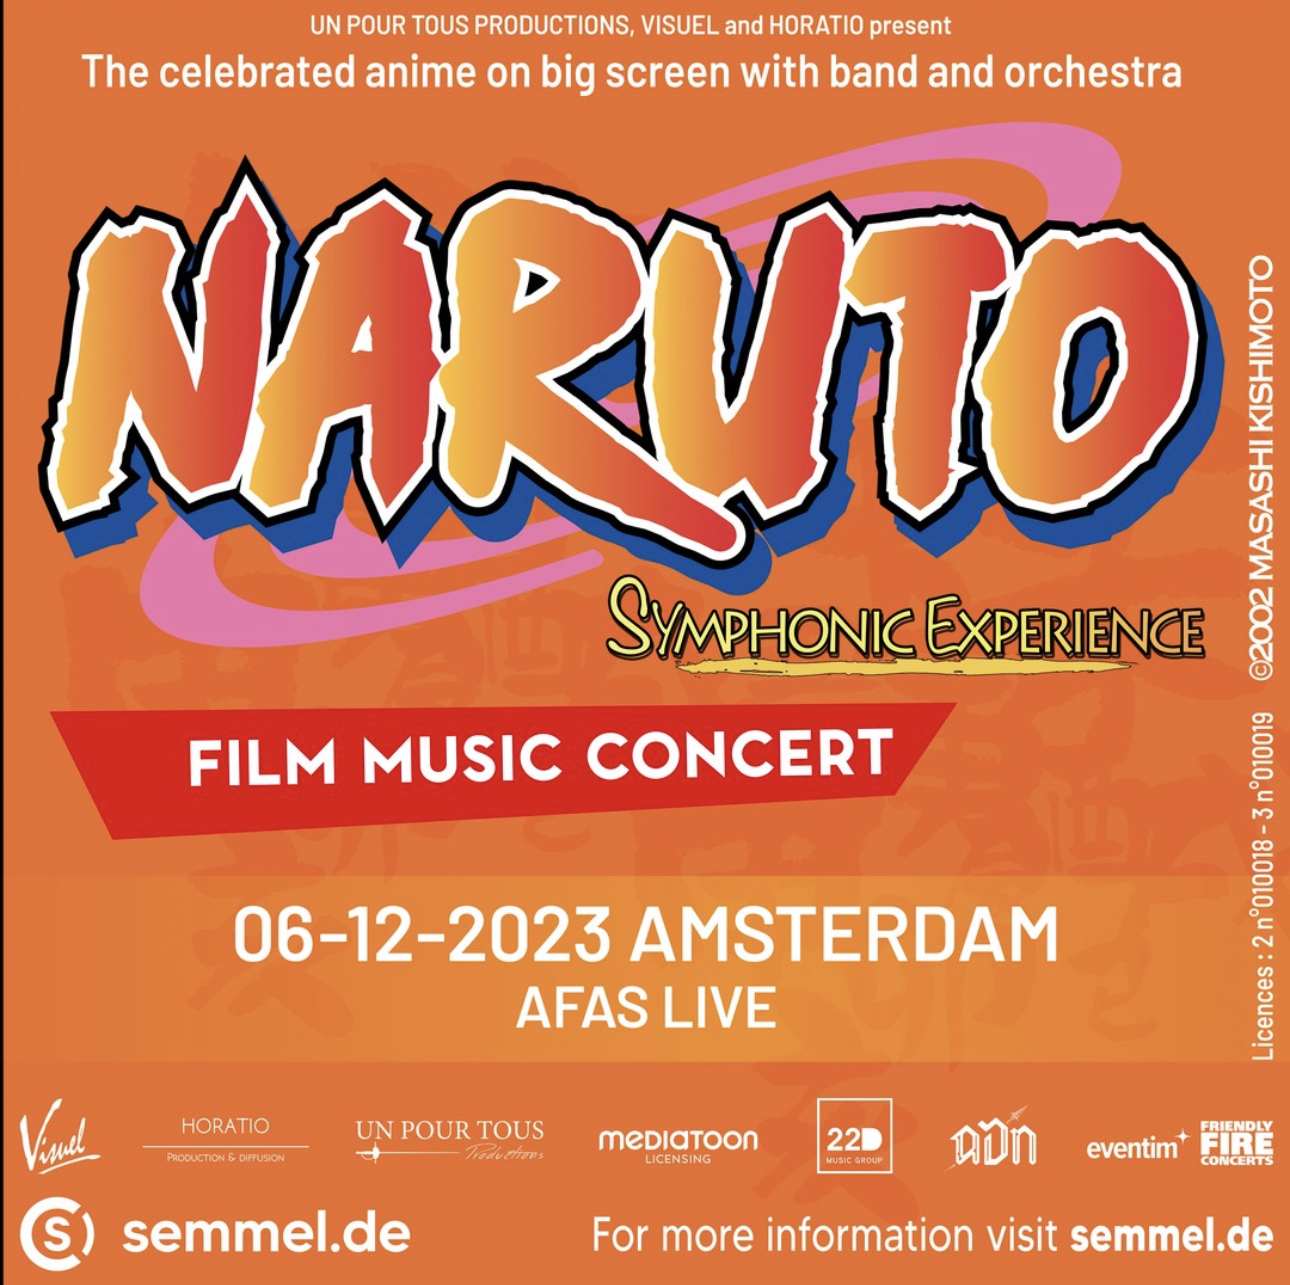 Naruto Symphonic Experience afbeelding met concert informatie.